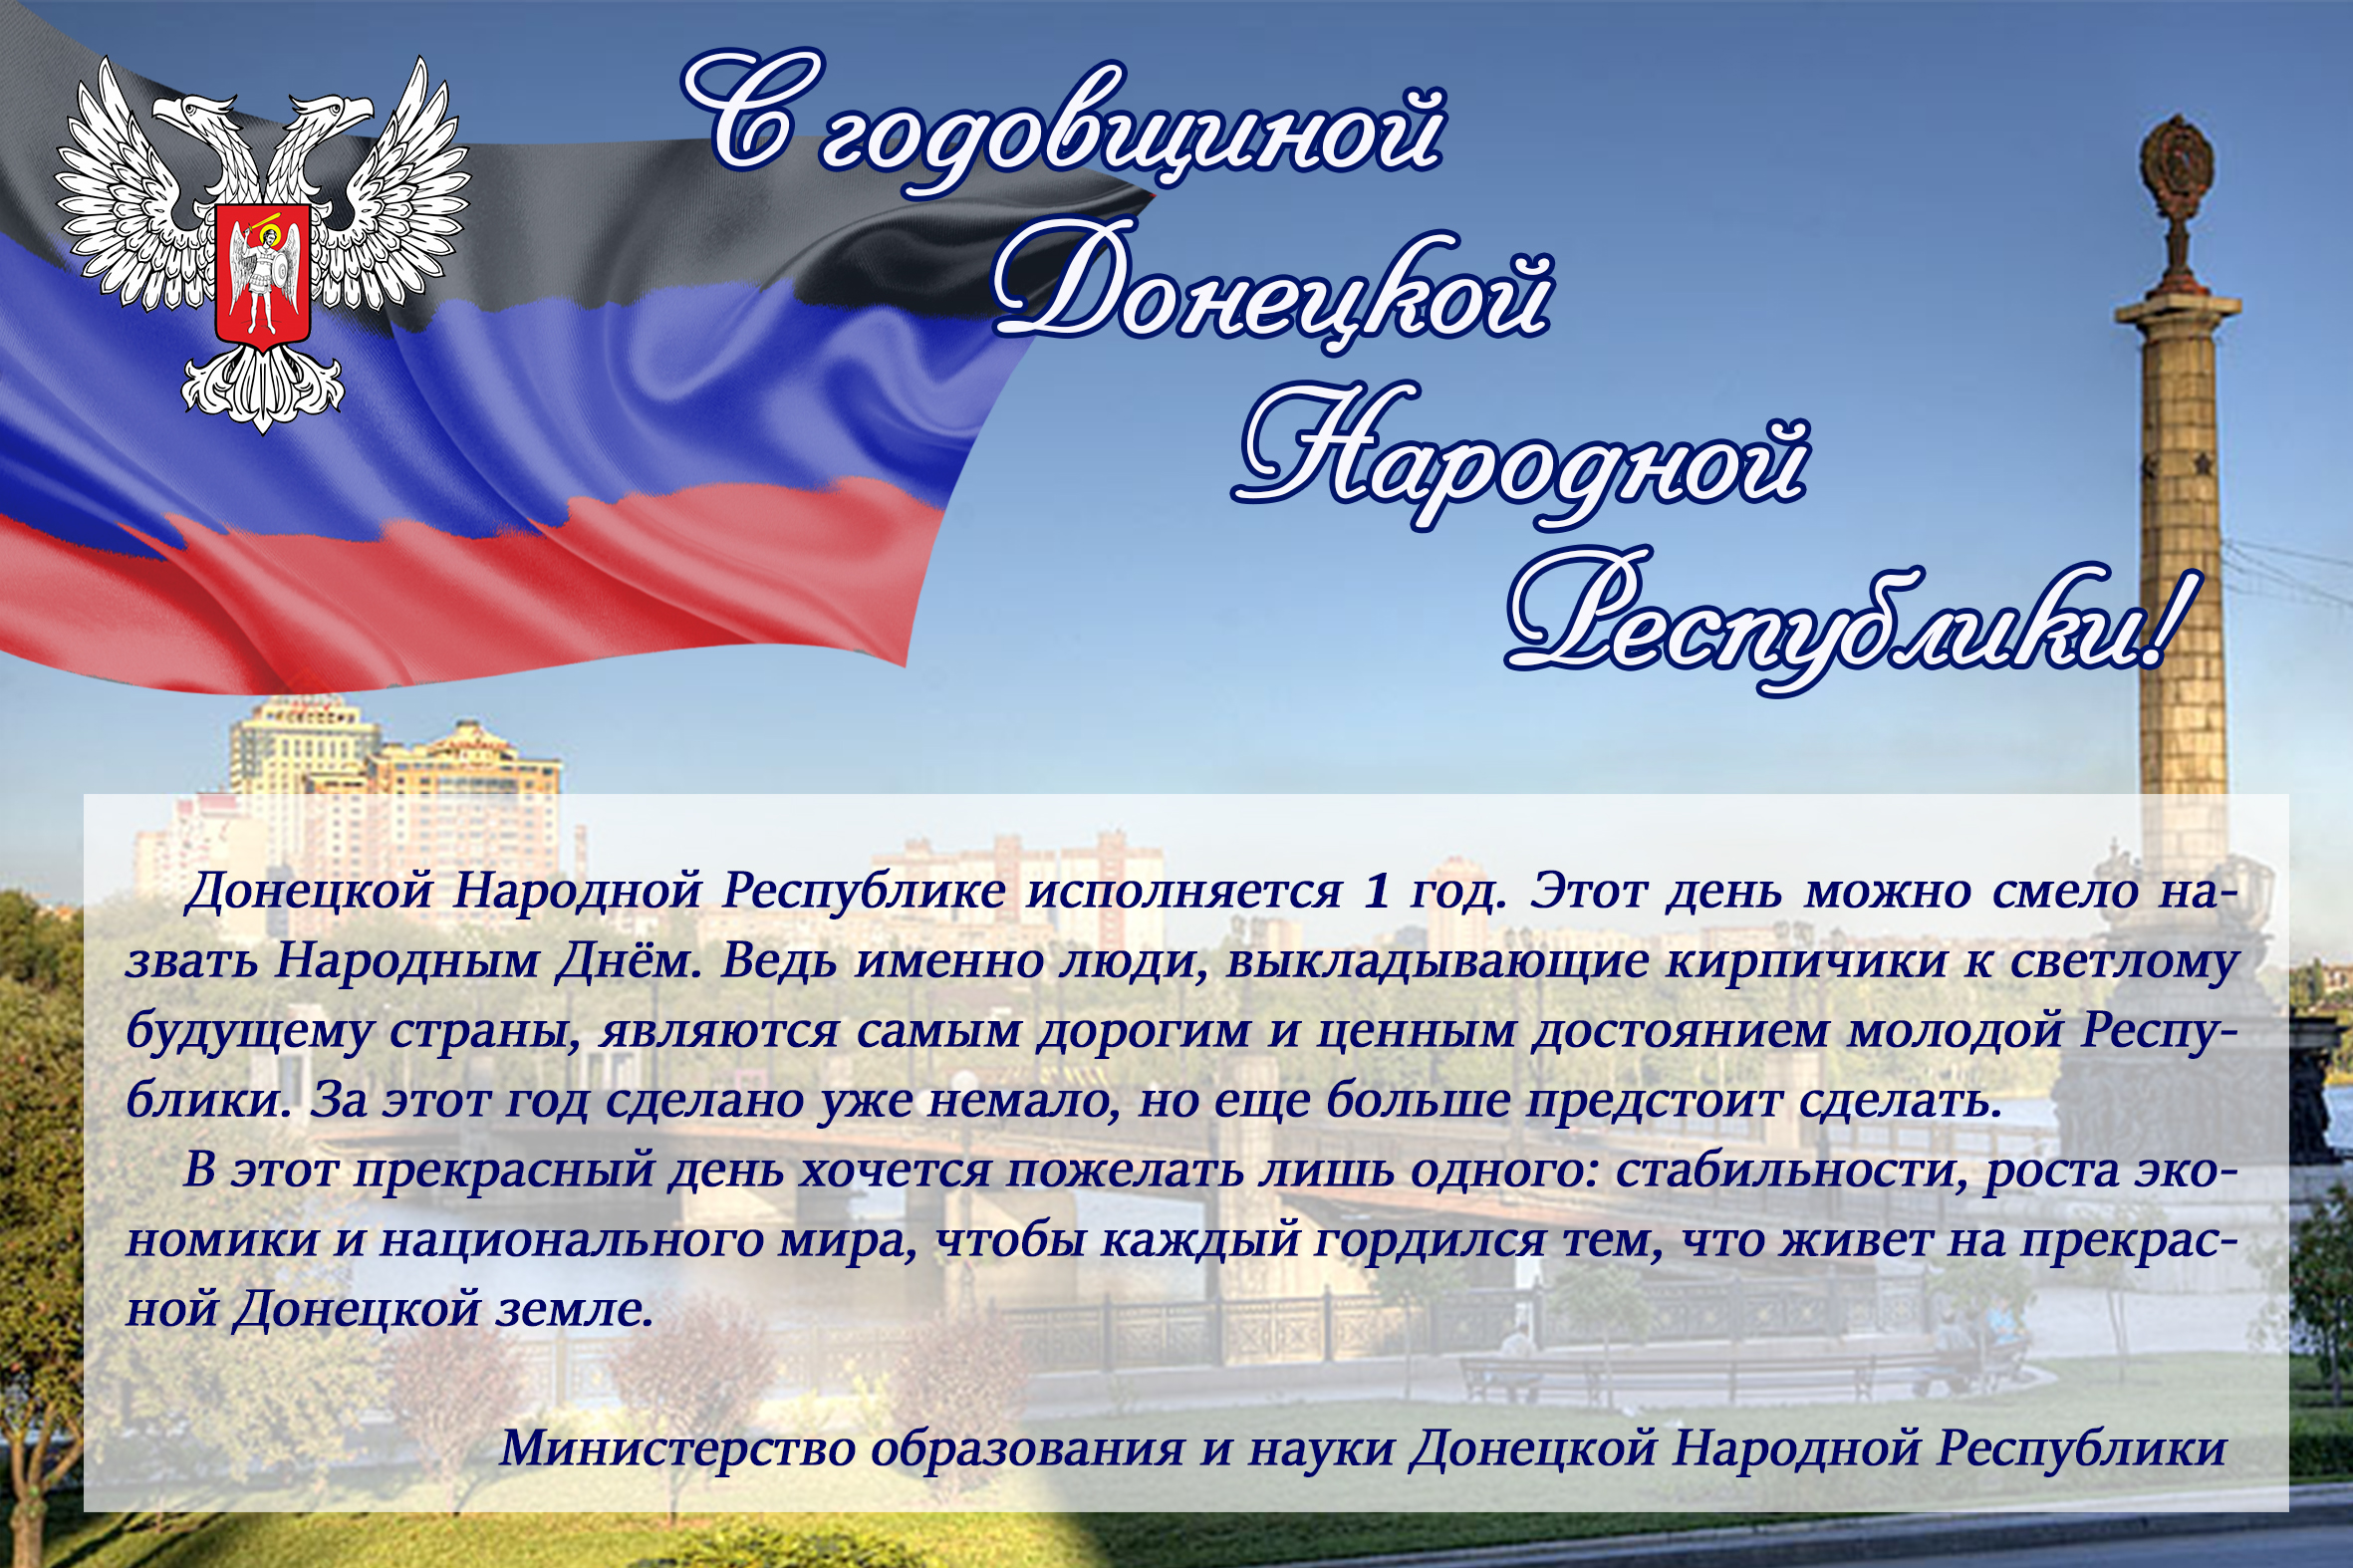 11 мая будет ли. Поздравление с днем Республики. Поздравление с 11 мая день Республики. Поздравления с днём Донецкой Республики. Поздравление с днем ДНР.